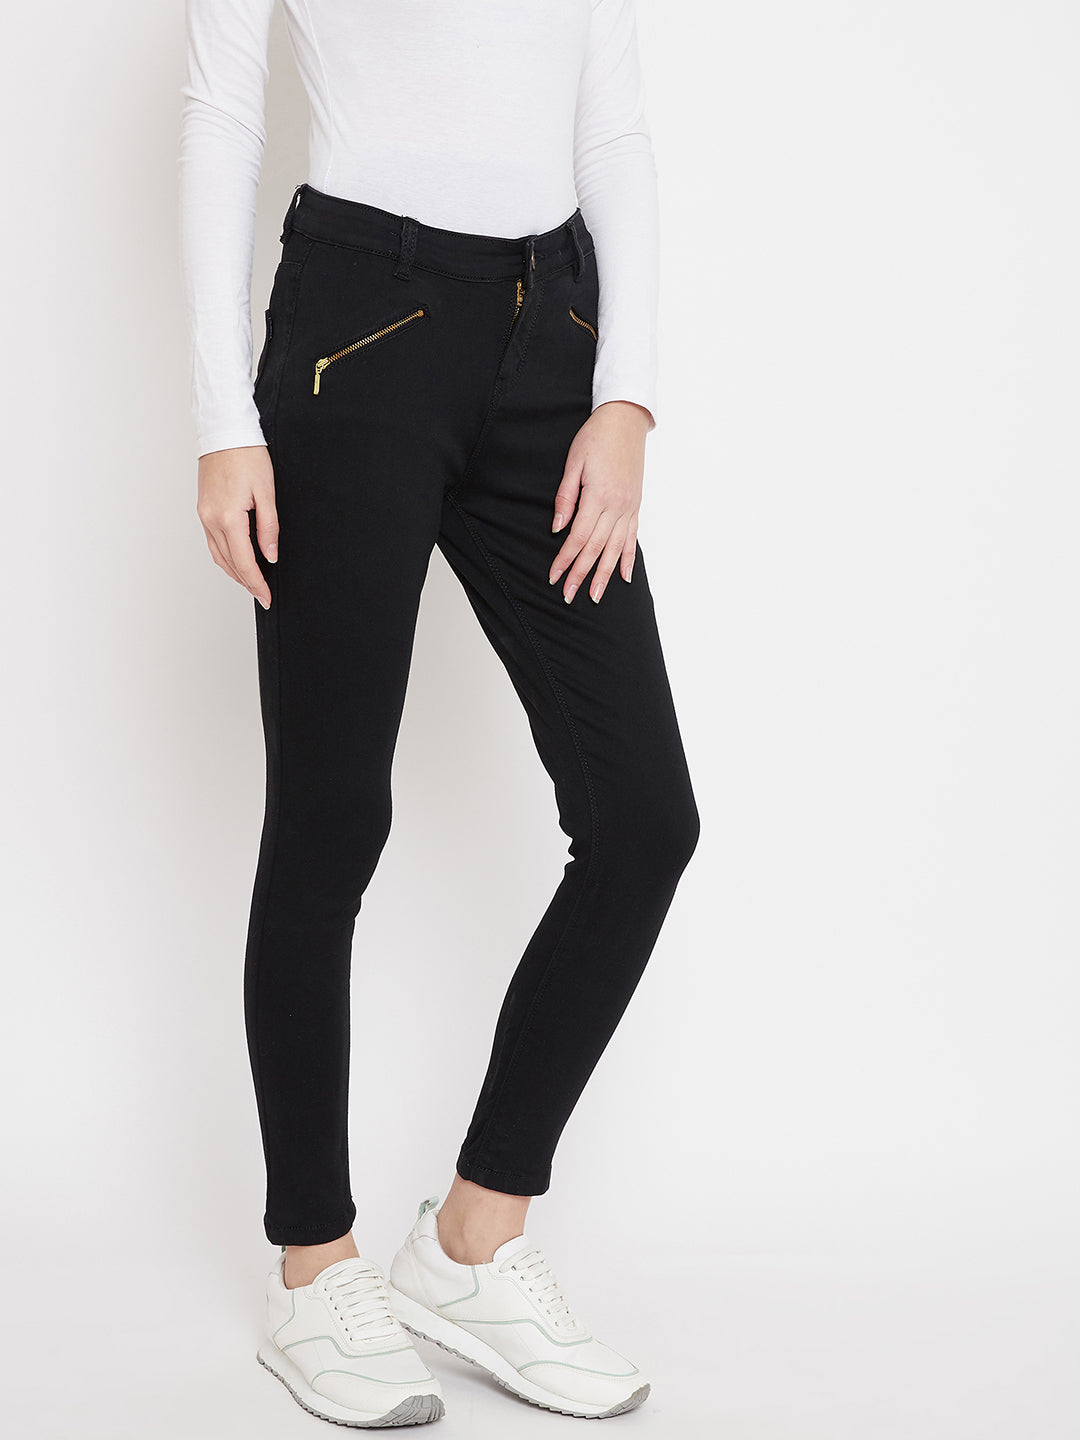 Black Skinny fit Jeans - Women Jeans